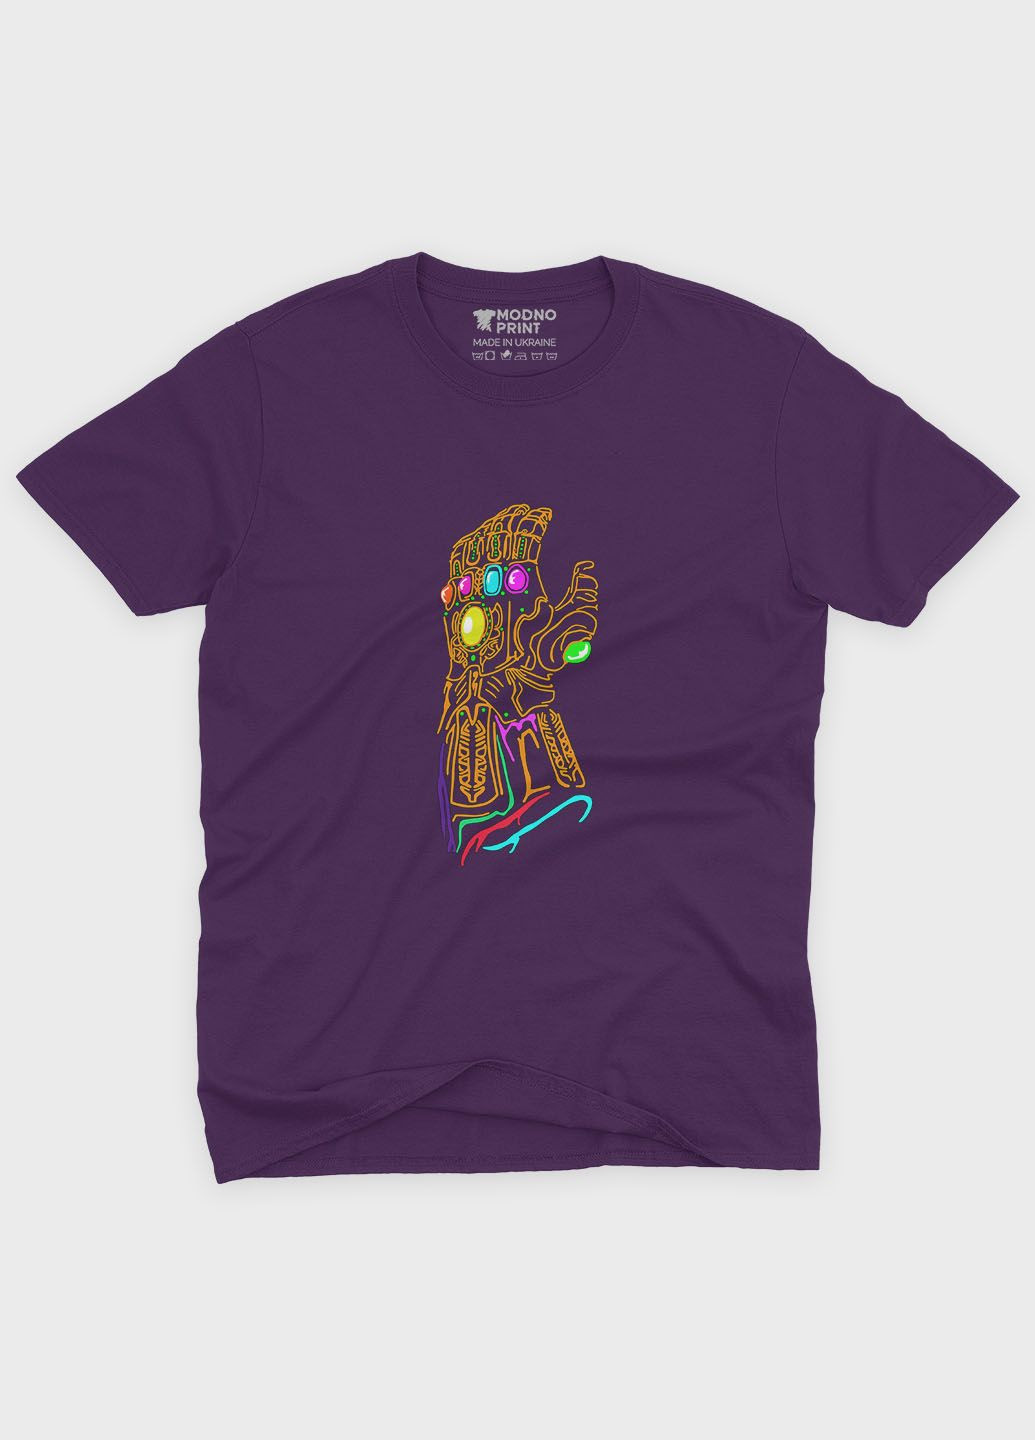 Фиолетовая демисезонная футболка для мальчика с принтом супезлоды - танос (ts001-1-dby-006-019-014-b) Modno